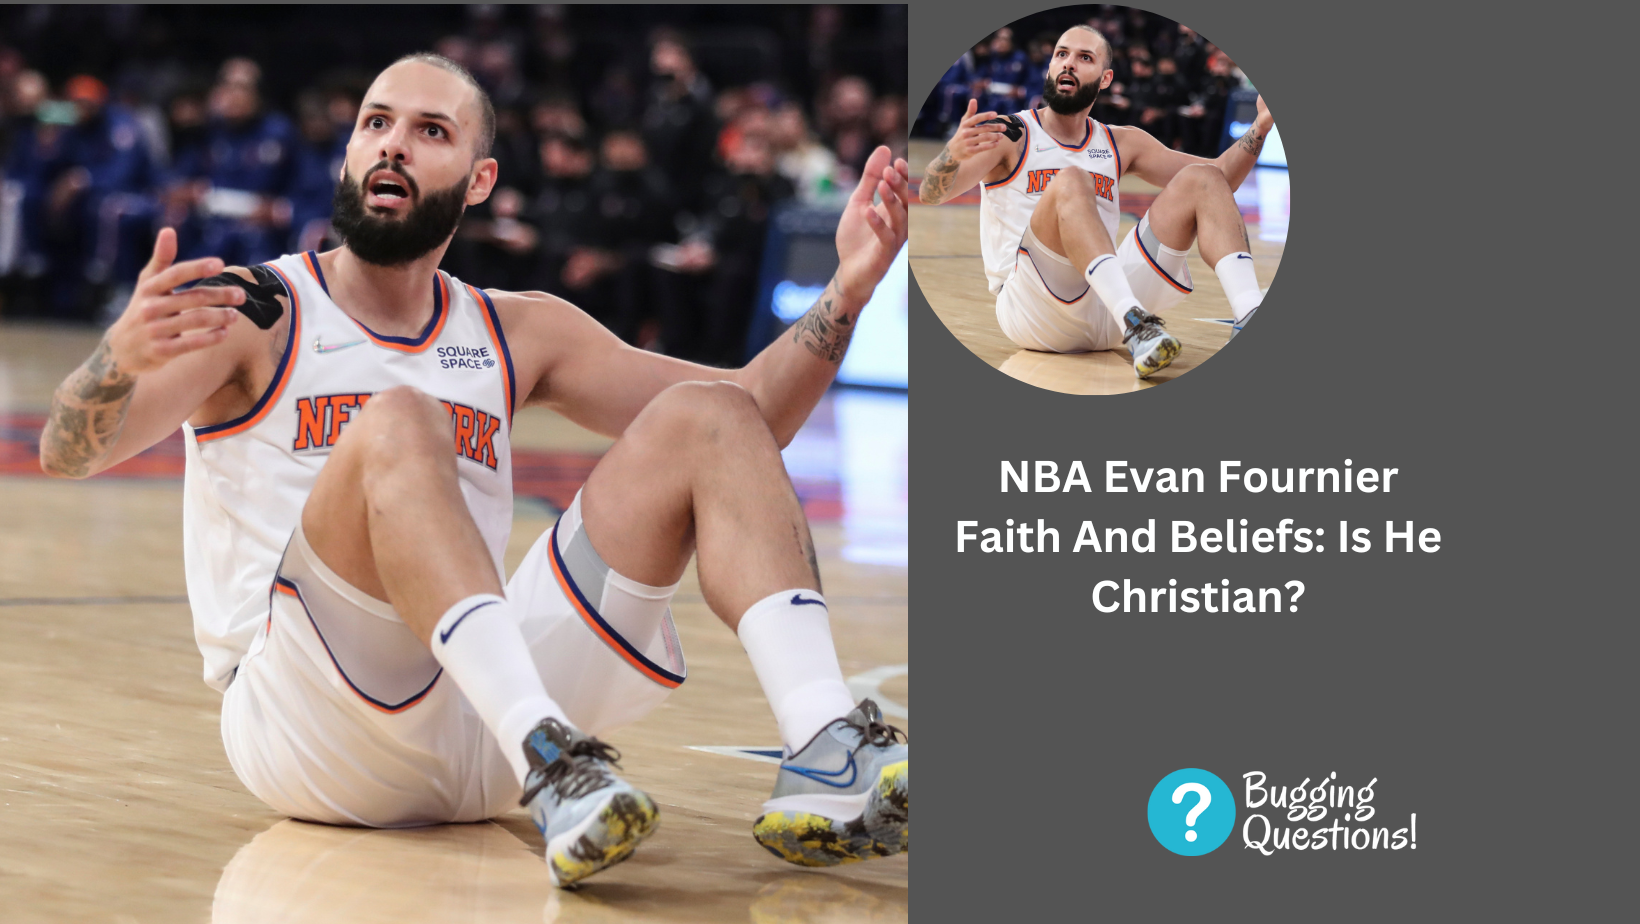 NBA Evan Fournier Faith And Beliefs: Is He Christian?